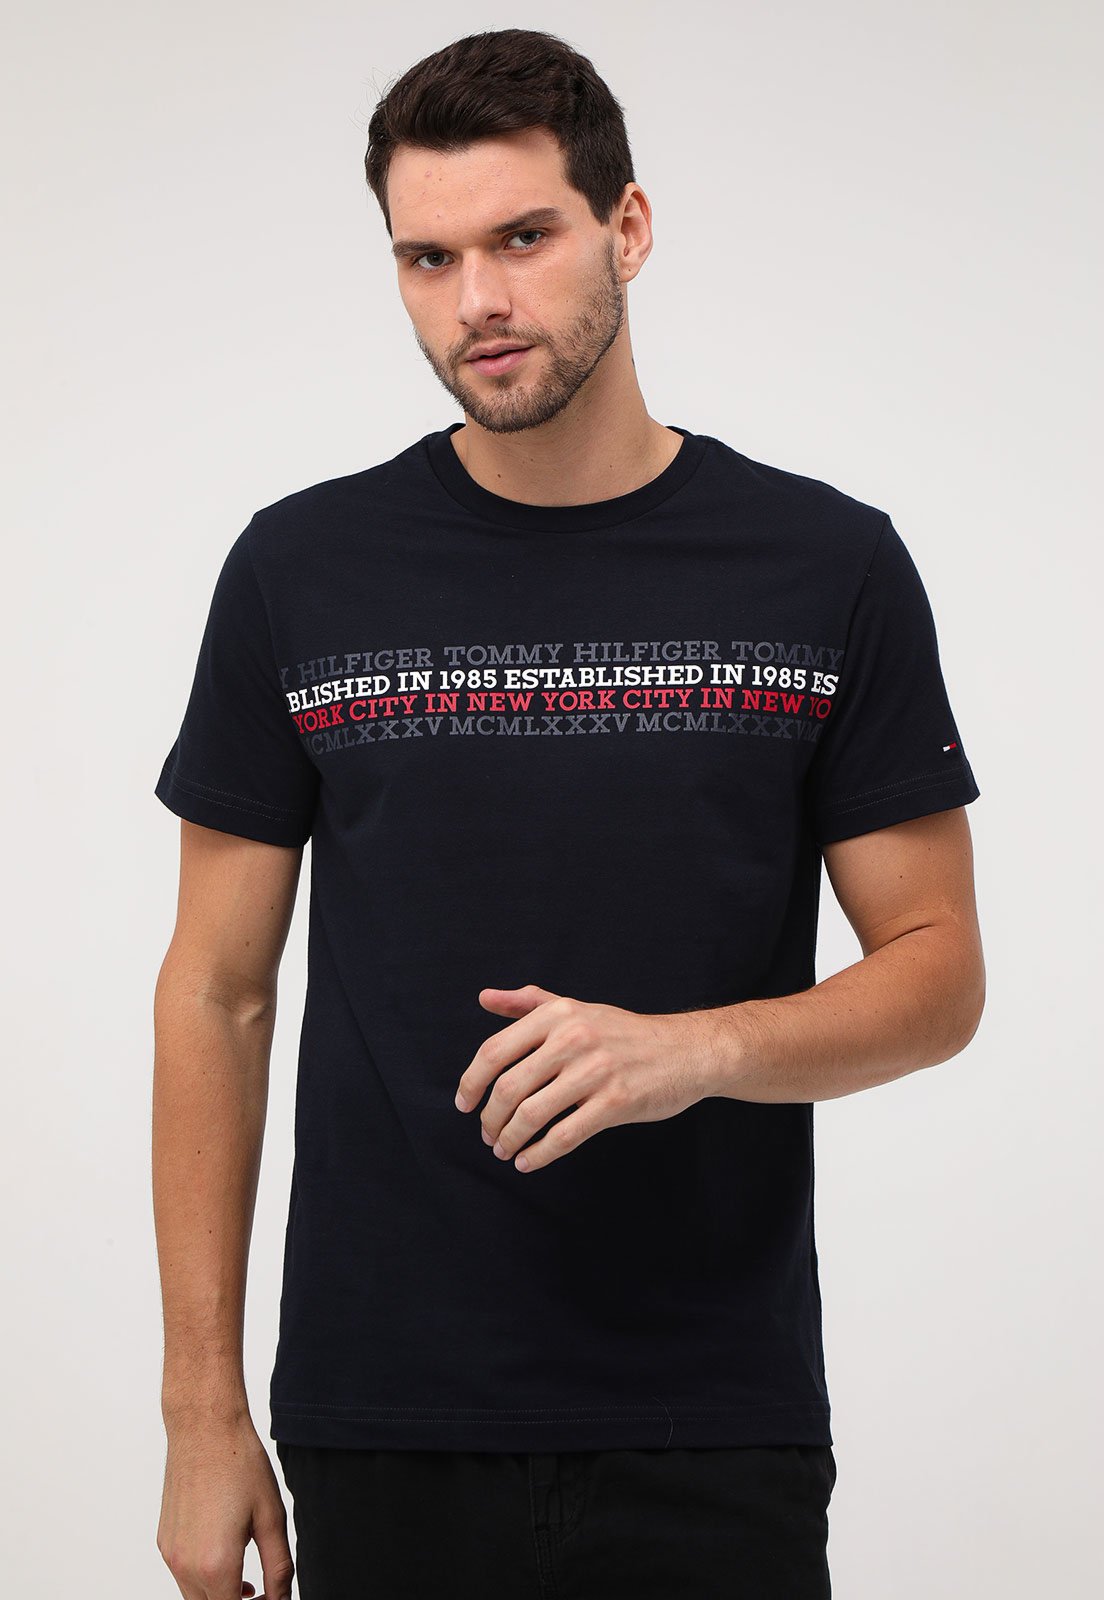 Camiseta Tommy Hilfiger New York Marinho